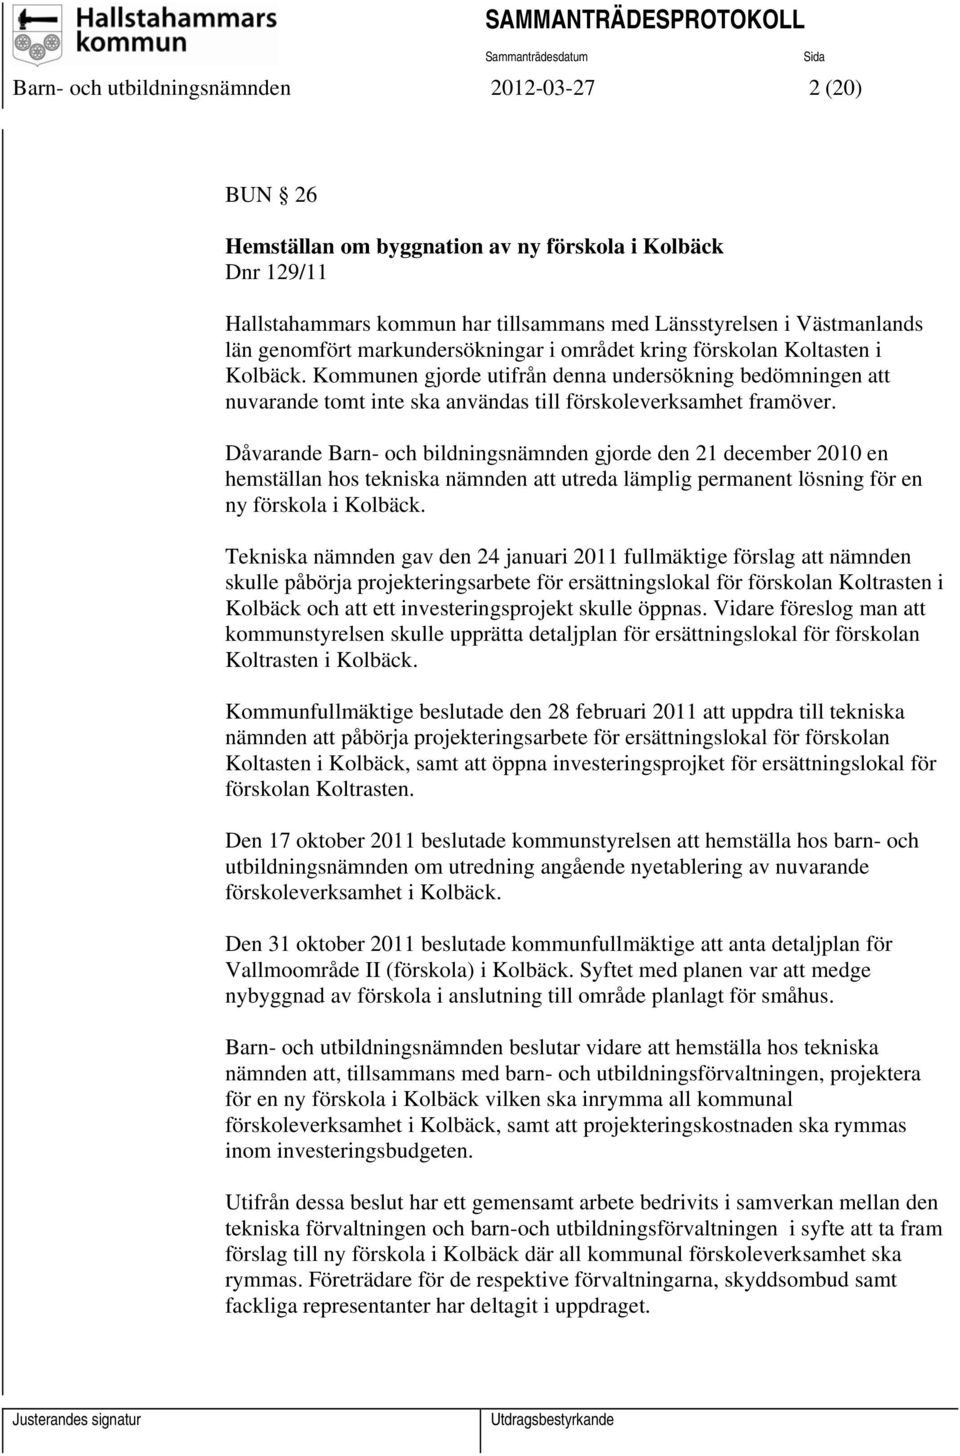 Dåvarande Barn- och bildningsnämnden gjorde den 21 december 2010 en hemställan hos tekniska nämnden att utreda lämplig permanent lösning för en ny förskola i Kolbäck.